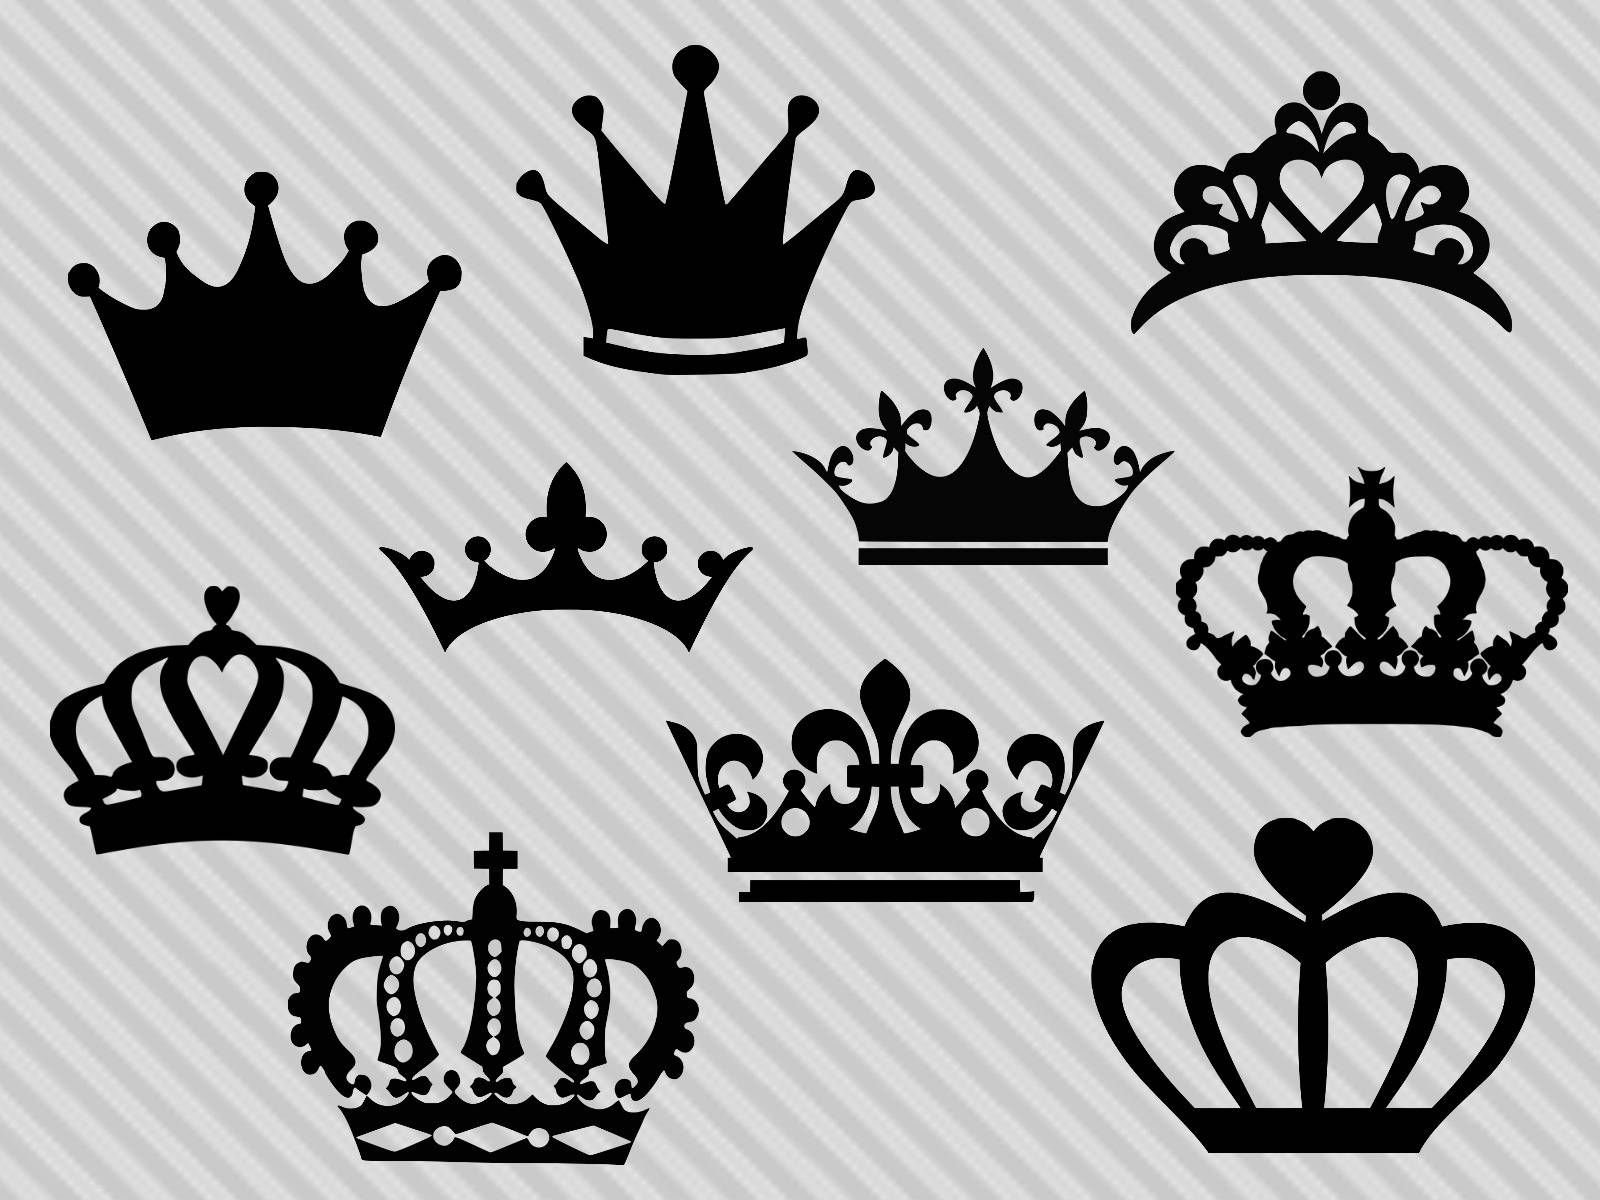 символы короны для пубг фото 108